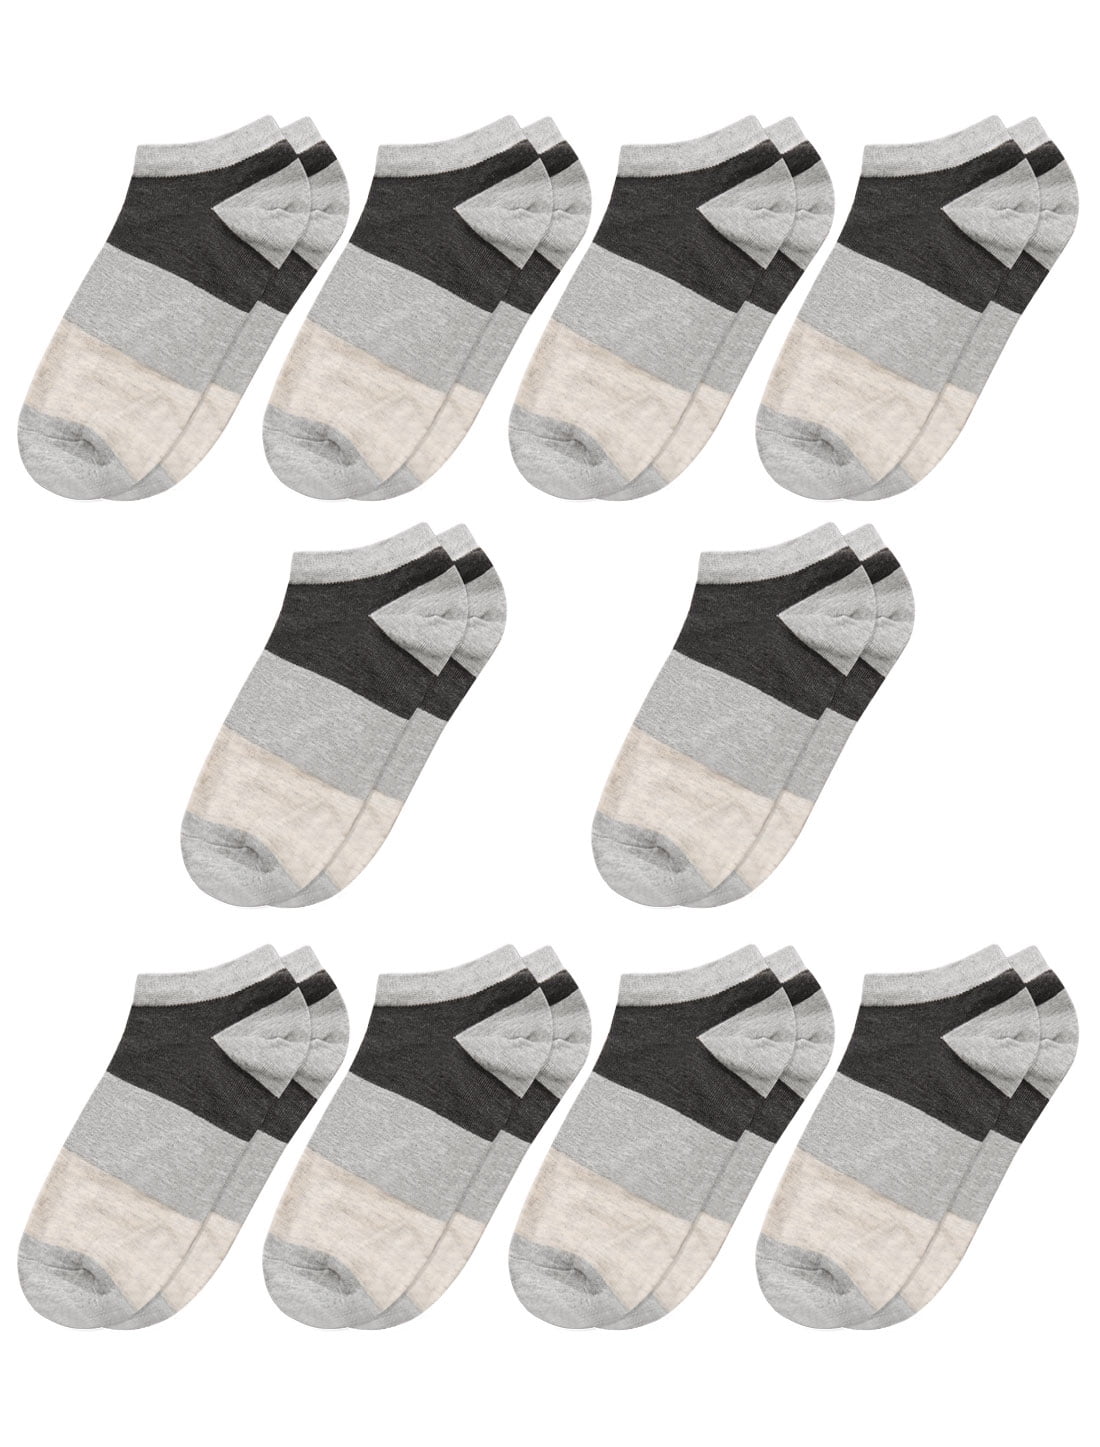 Men Low Cut Ankle Length Color Block Short Socks 10 Pairs Beige M ...